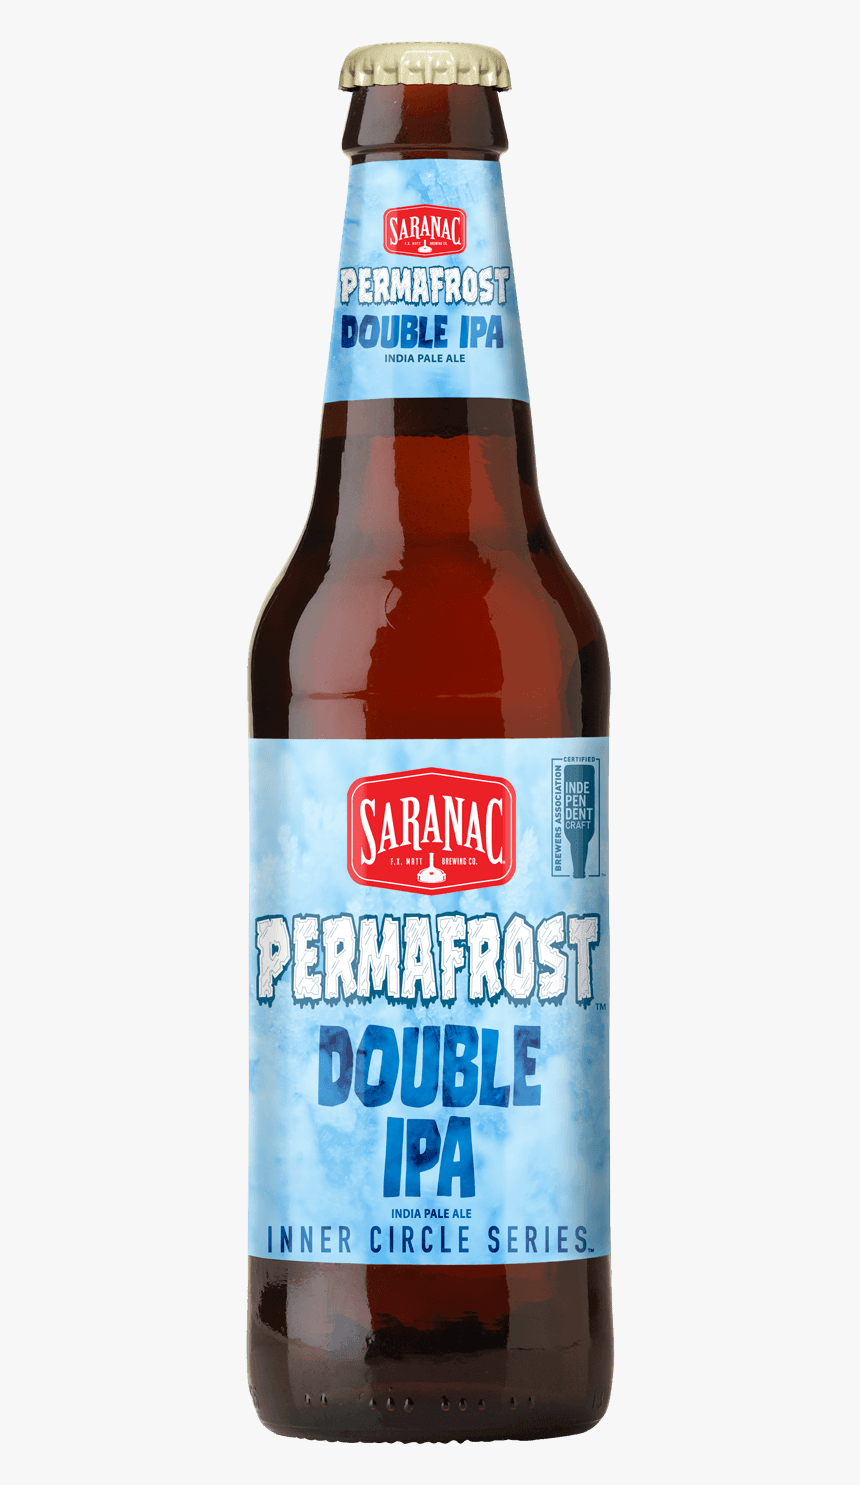 Saranac Permafrost Ipa Bottle - 